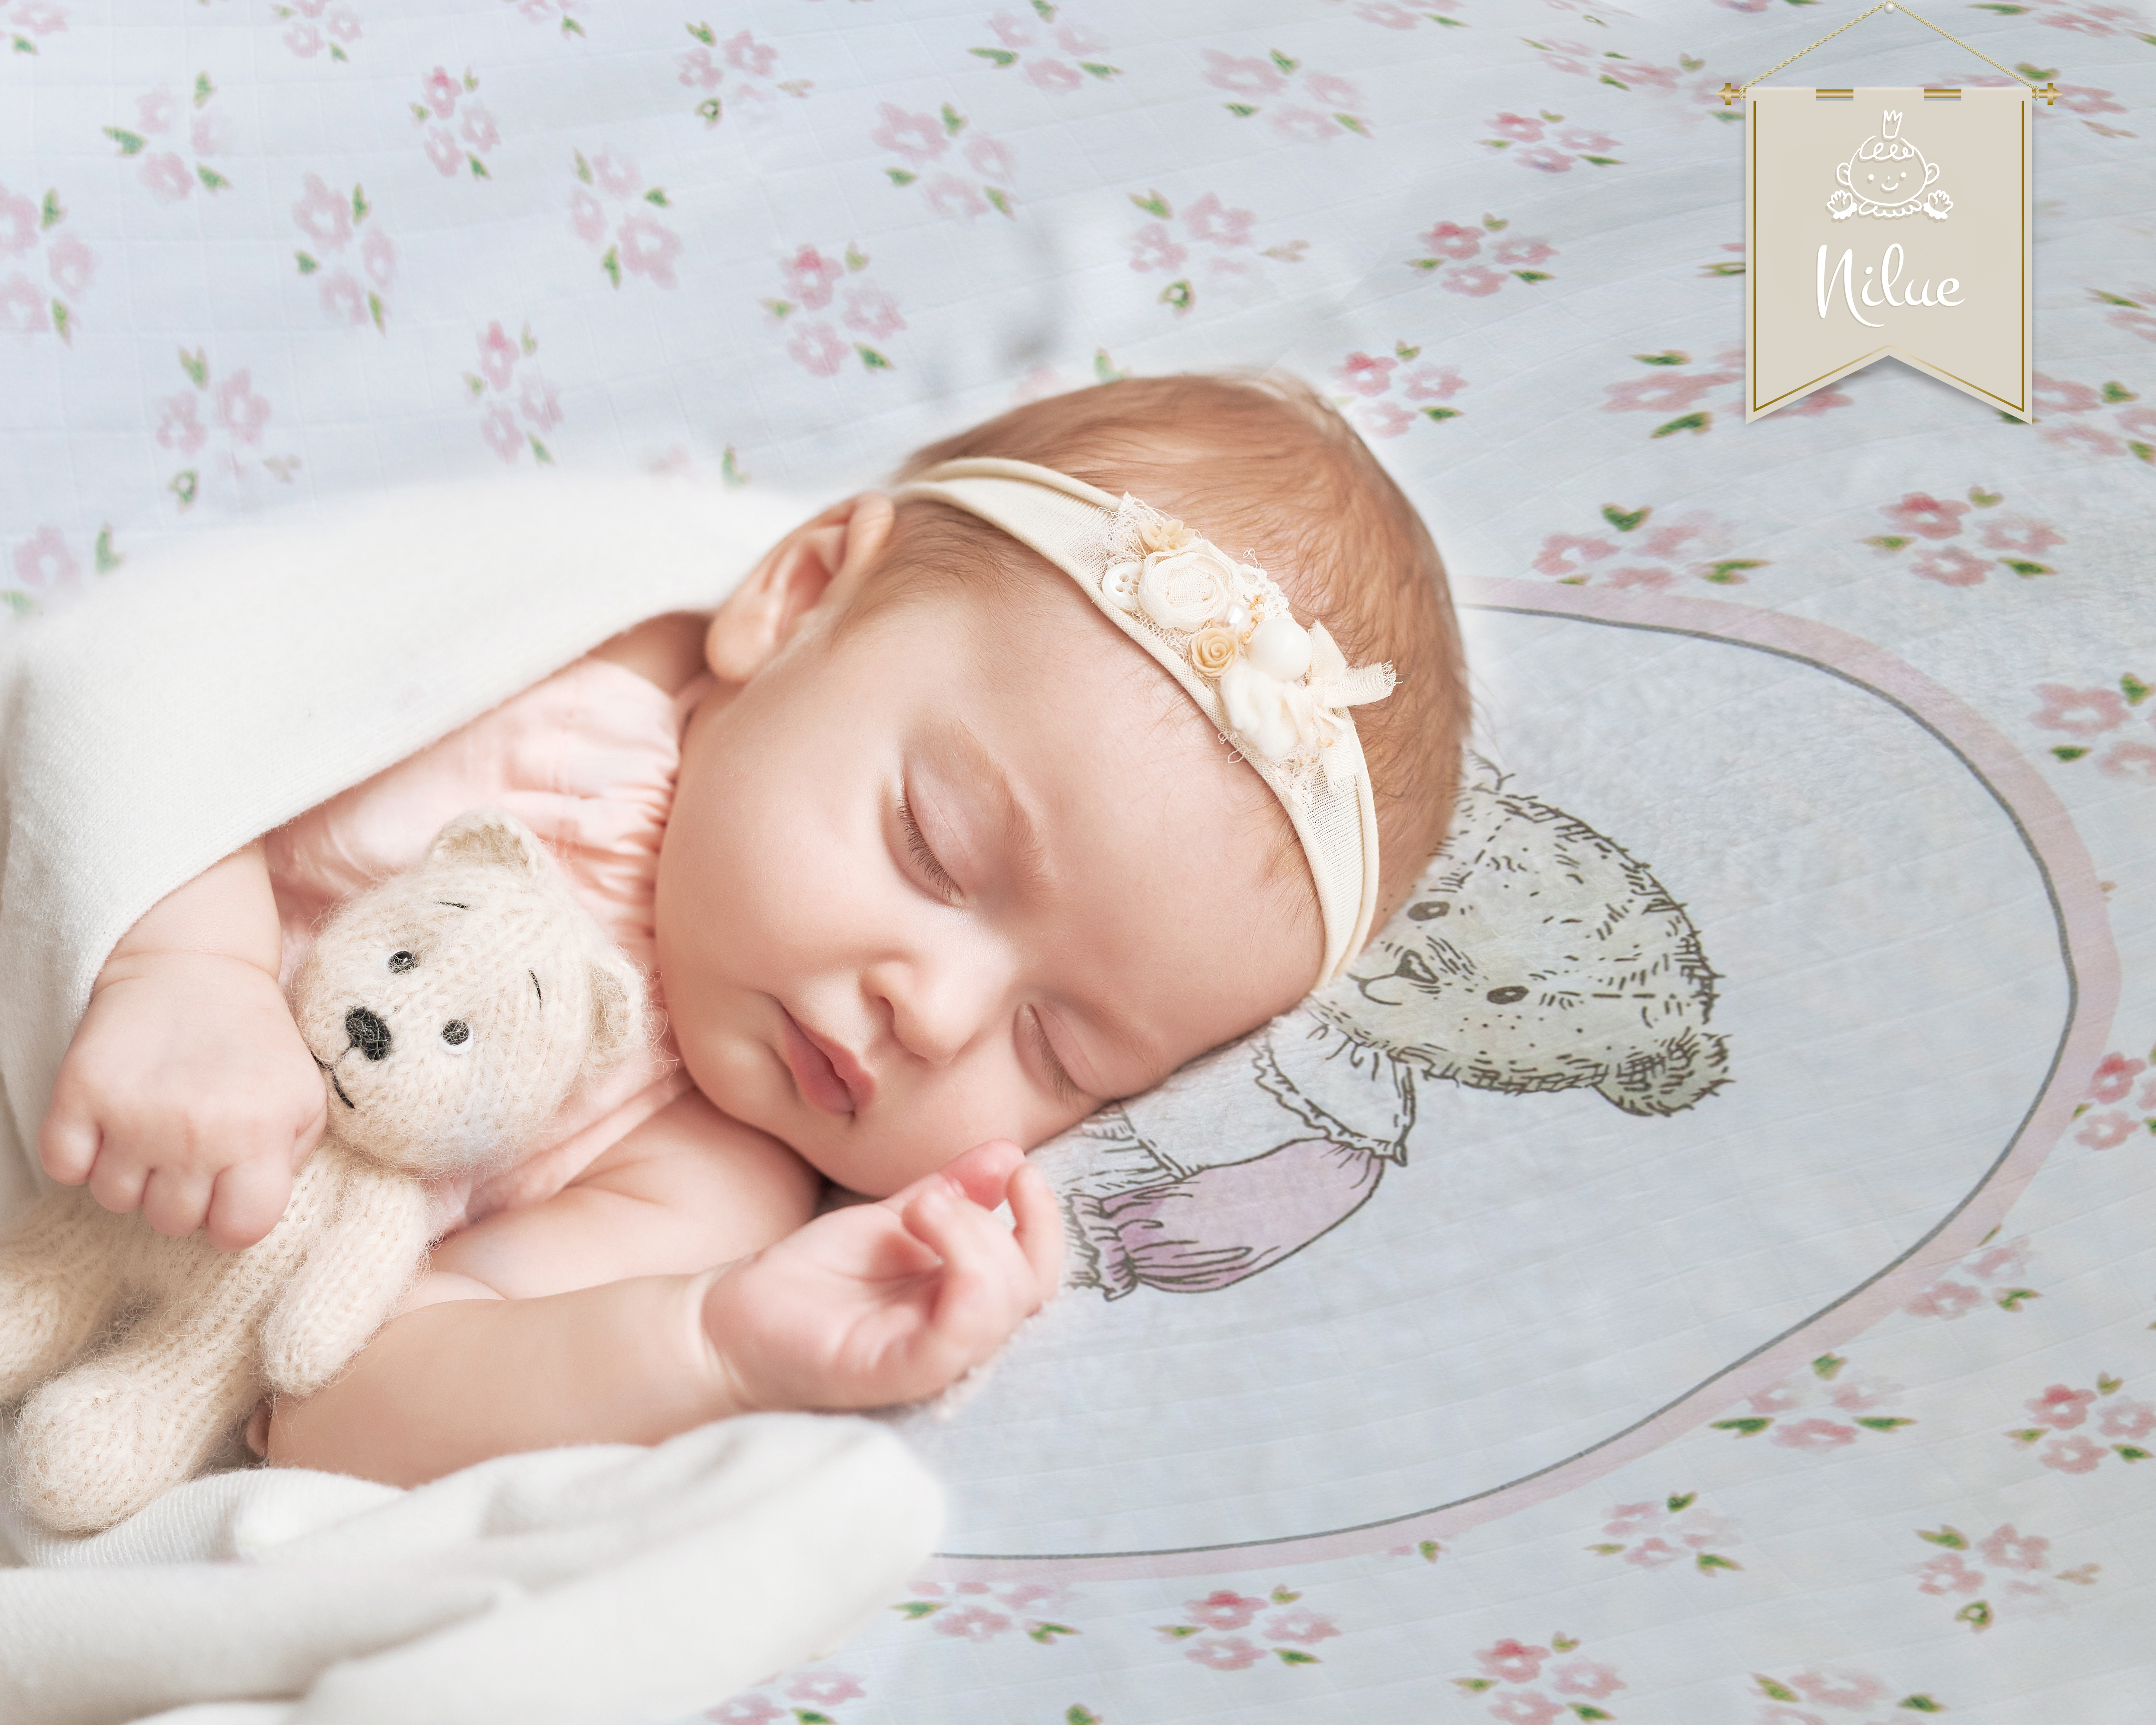 Казахские колыбельные песни. Фон для фото спящего малыша. Фото младенца девочки для вышивки. Әлди әлди Жазира Байырбекова текст. Baby Canvas Wallpaper.